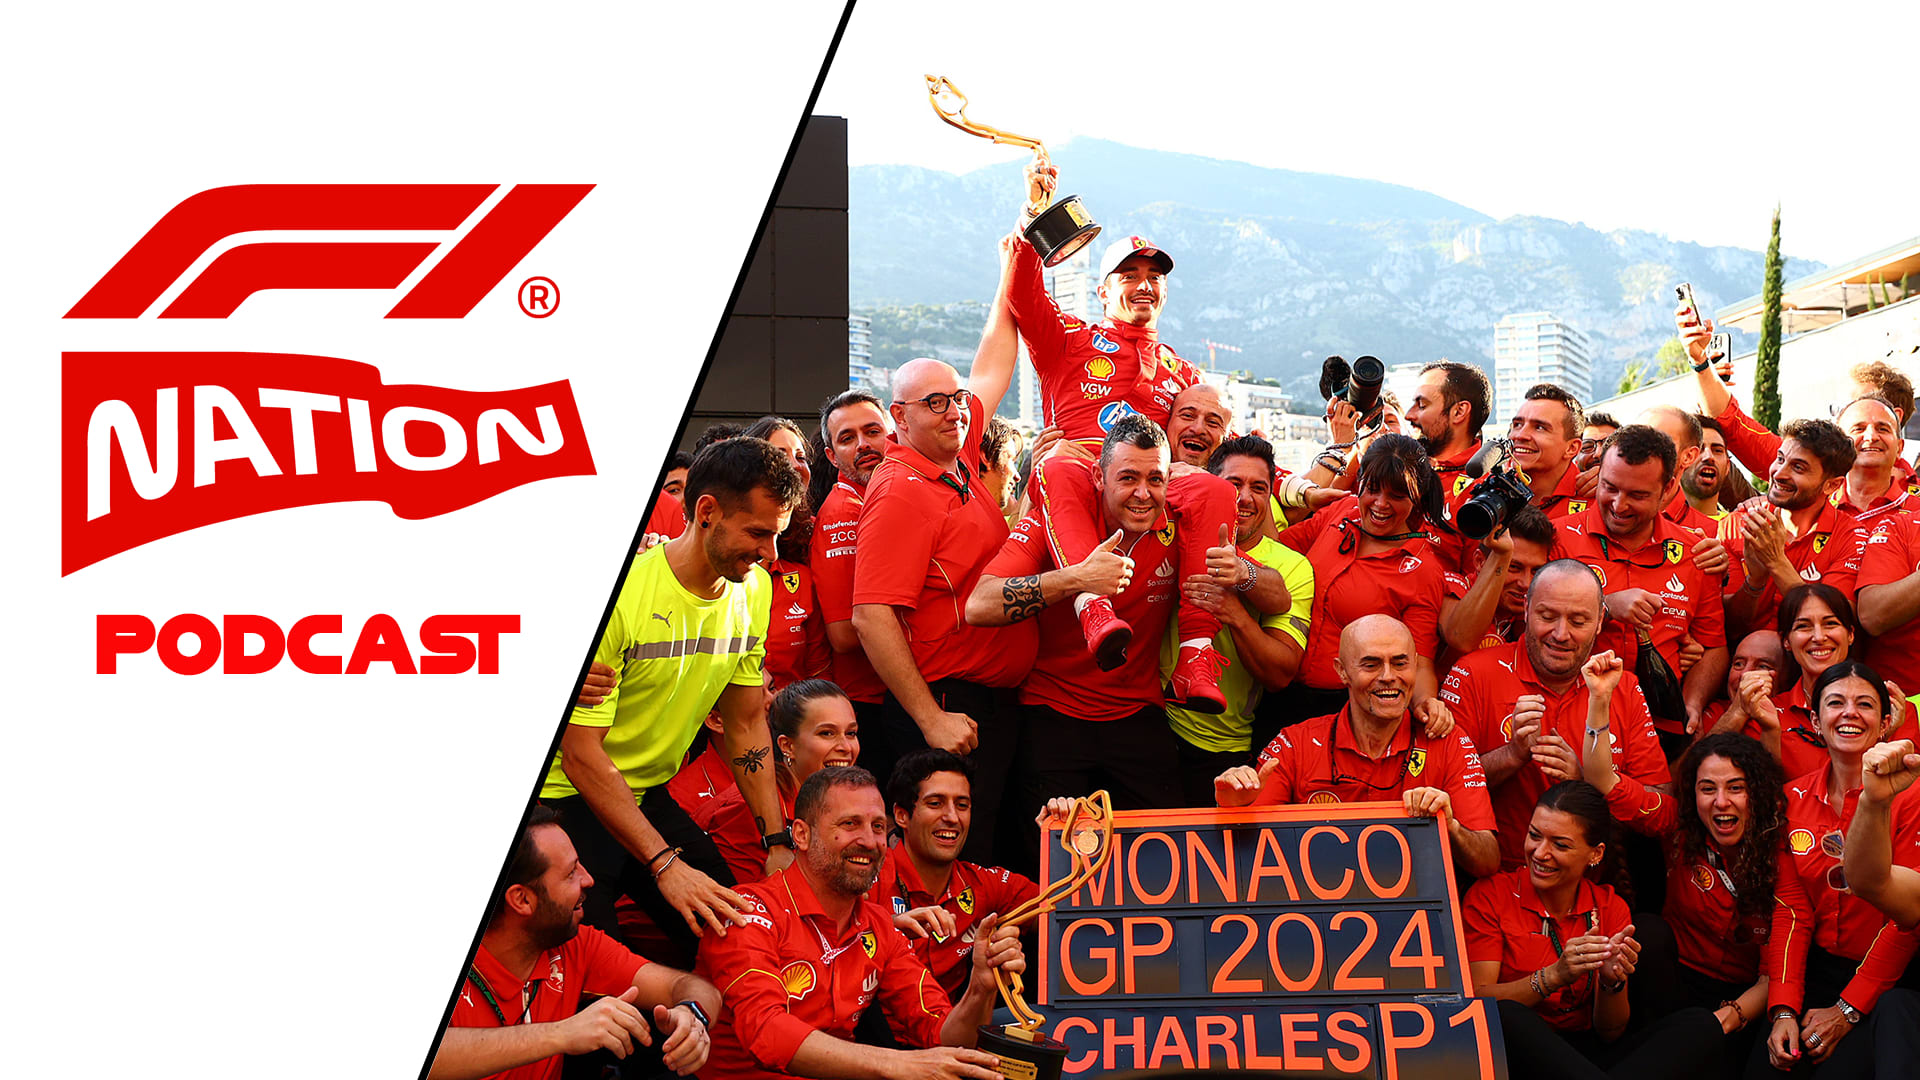 F1 NATION Can Leclerc’s Monaco masterclass ignite Ferrari’s title